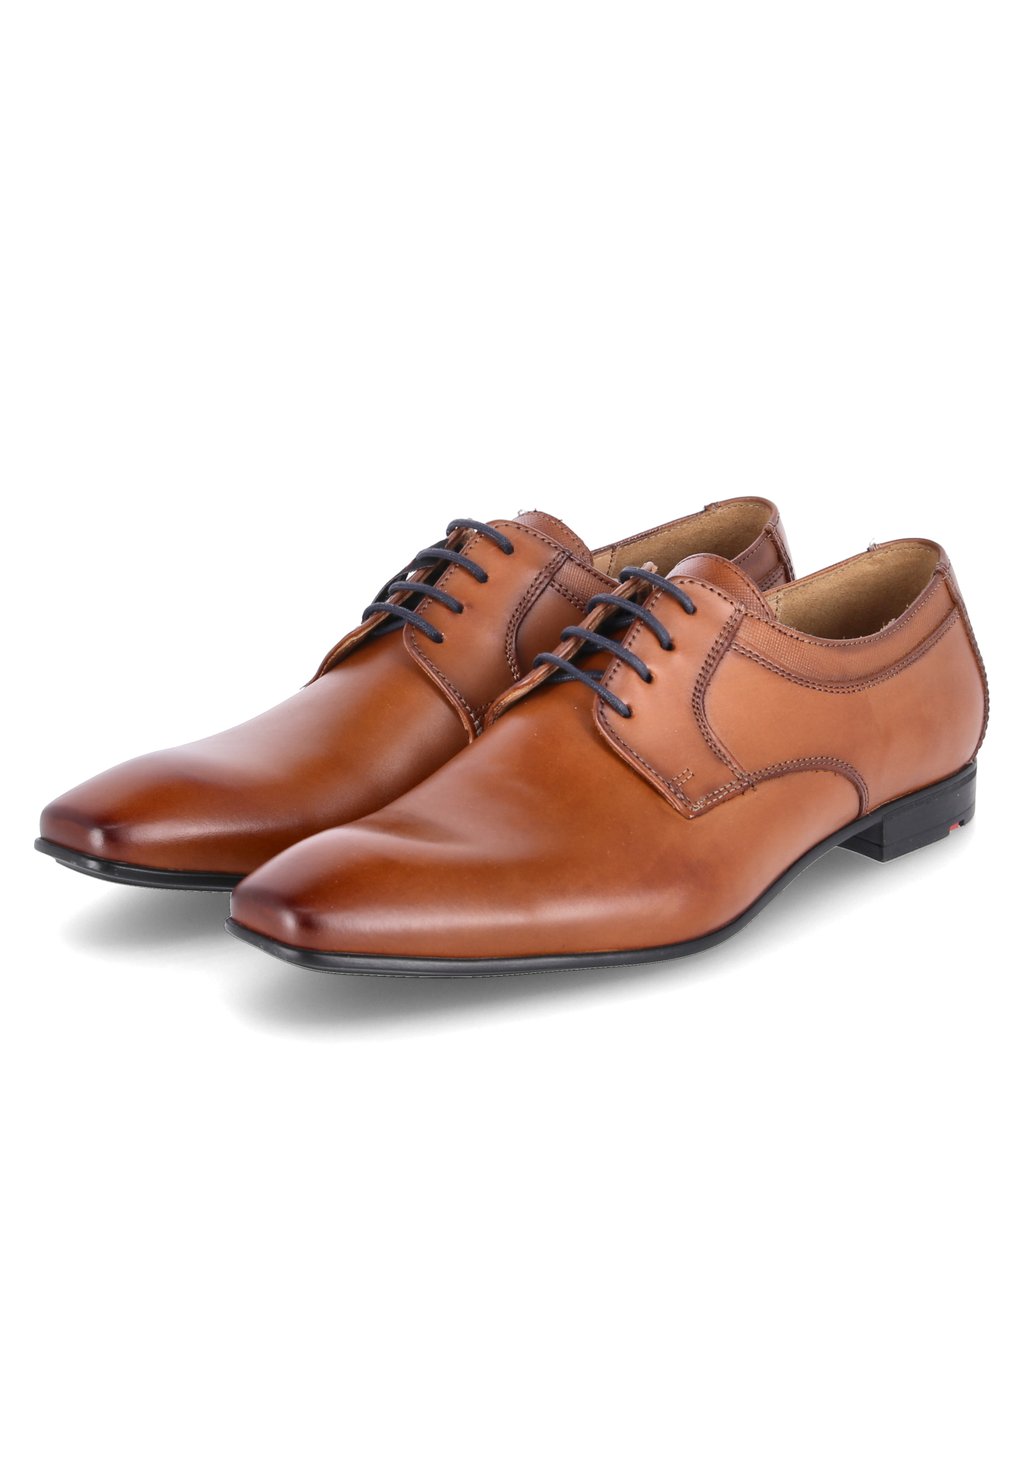 Деловые туфли на шнуровке LENN Lloyd, цвет braun деловые туфли на шнуровке mare lloyd цвет braun